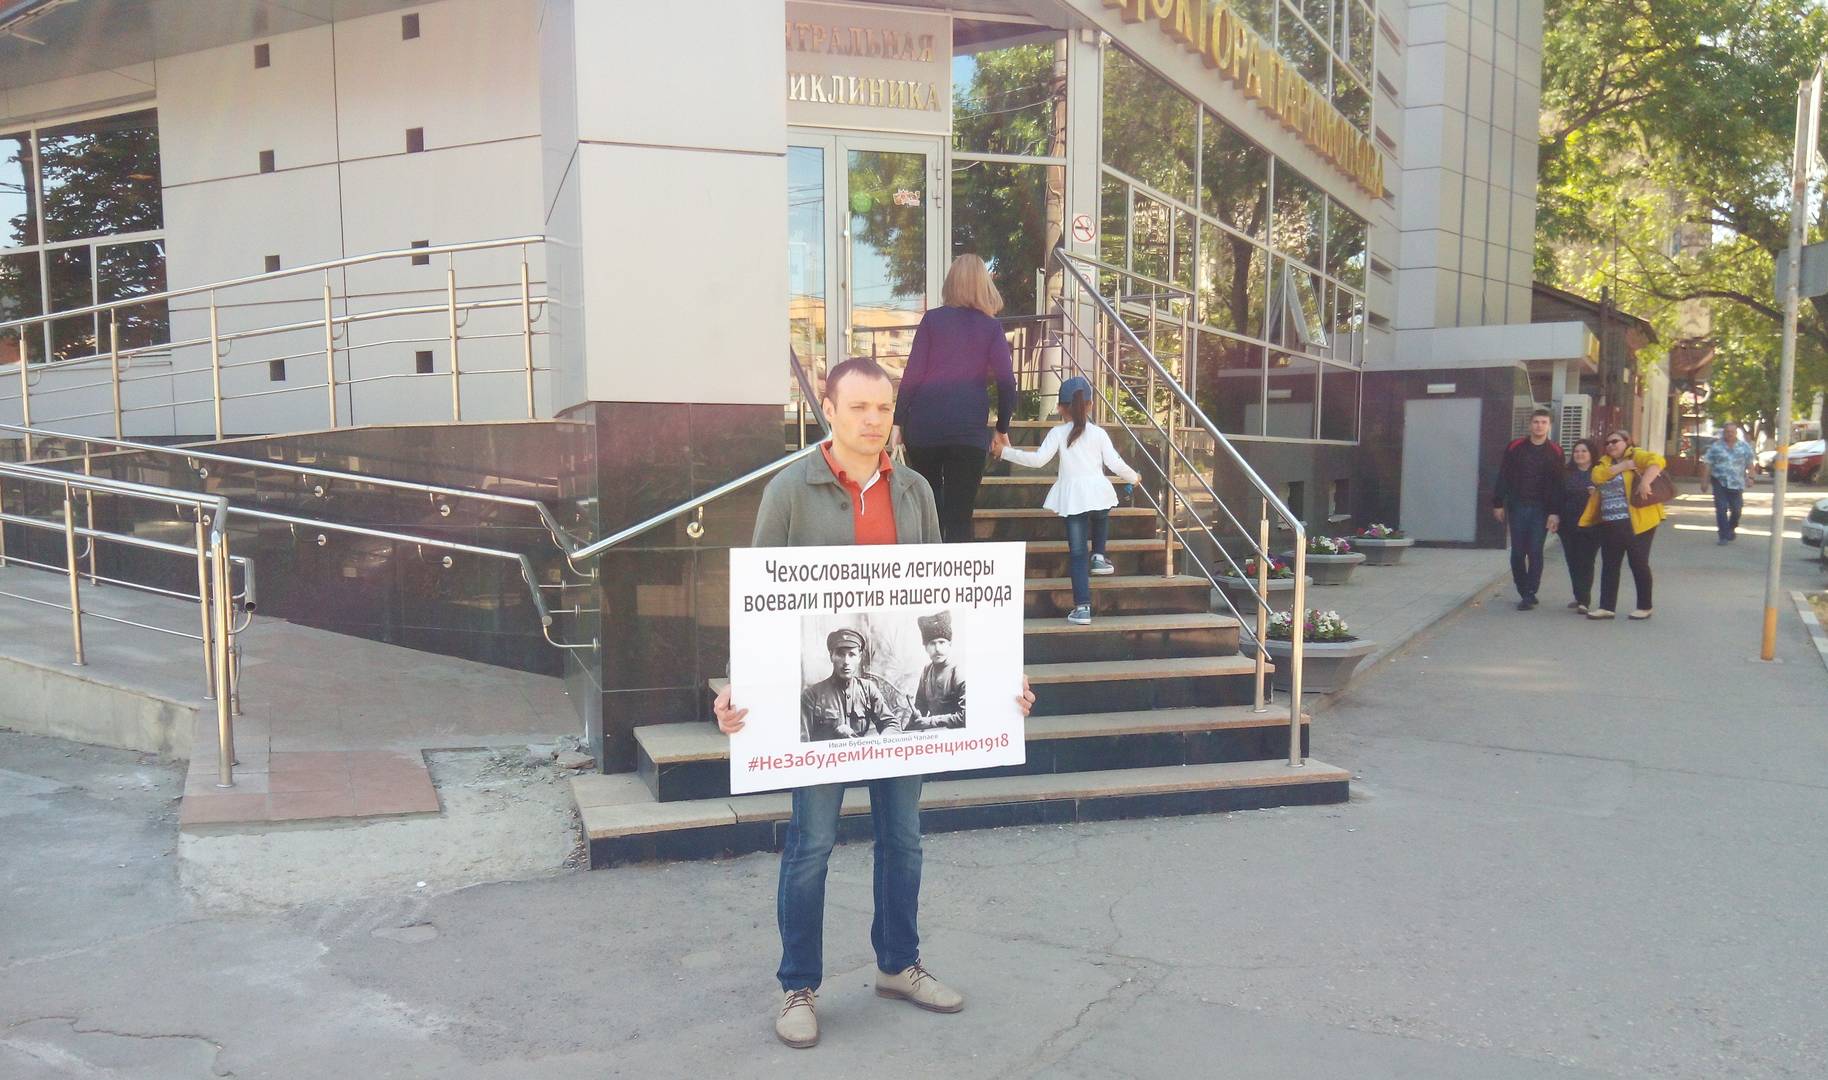 Пикет против героизации белочехов г. Саратов пересечение ул. Чапаева и ул. Кутякова